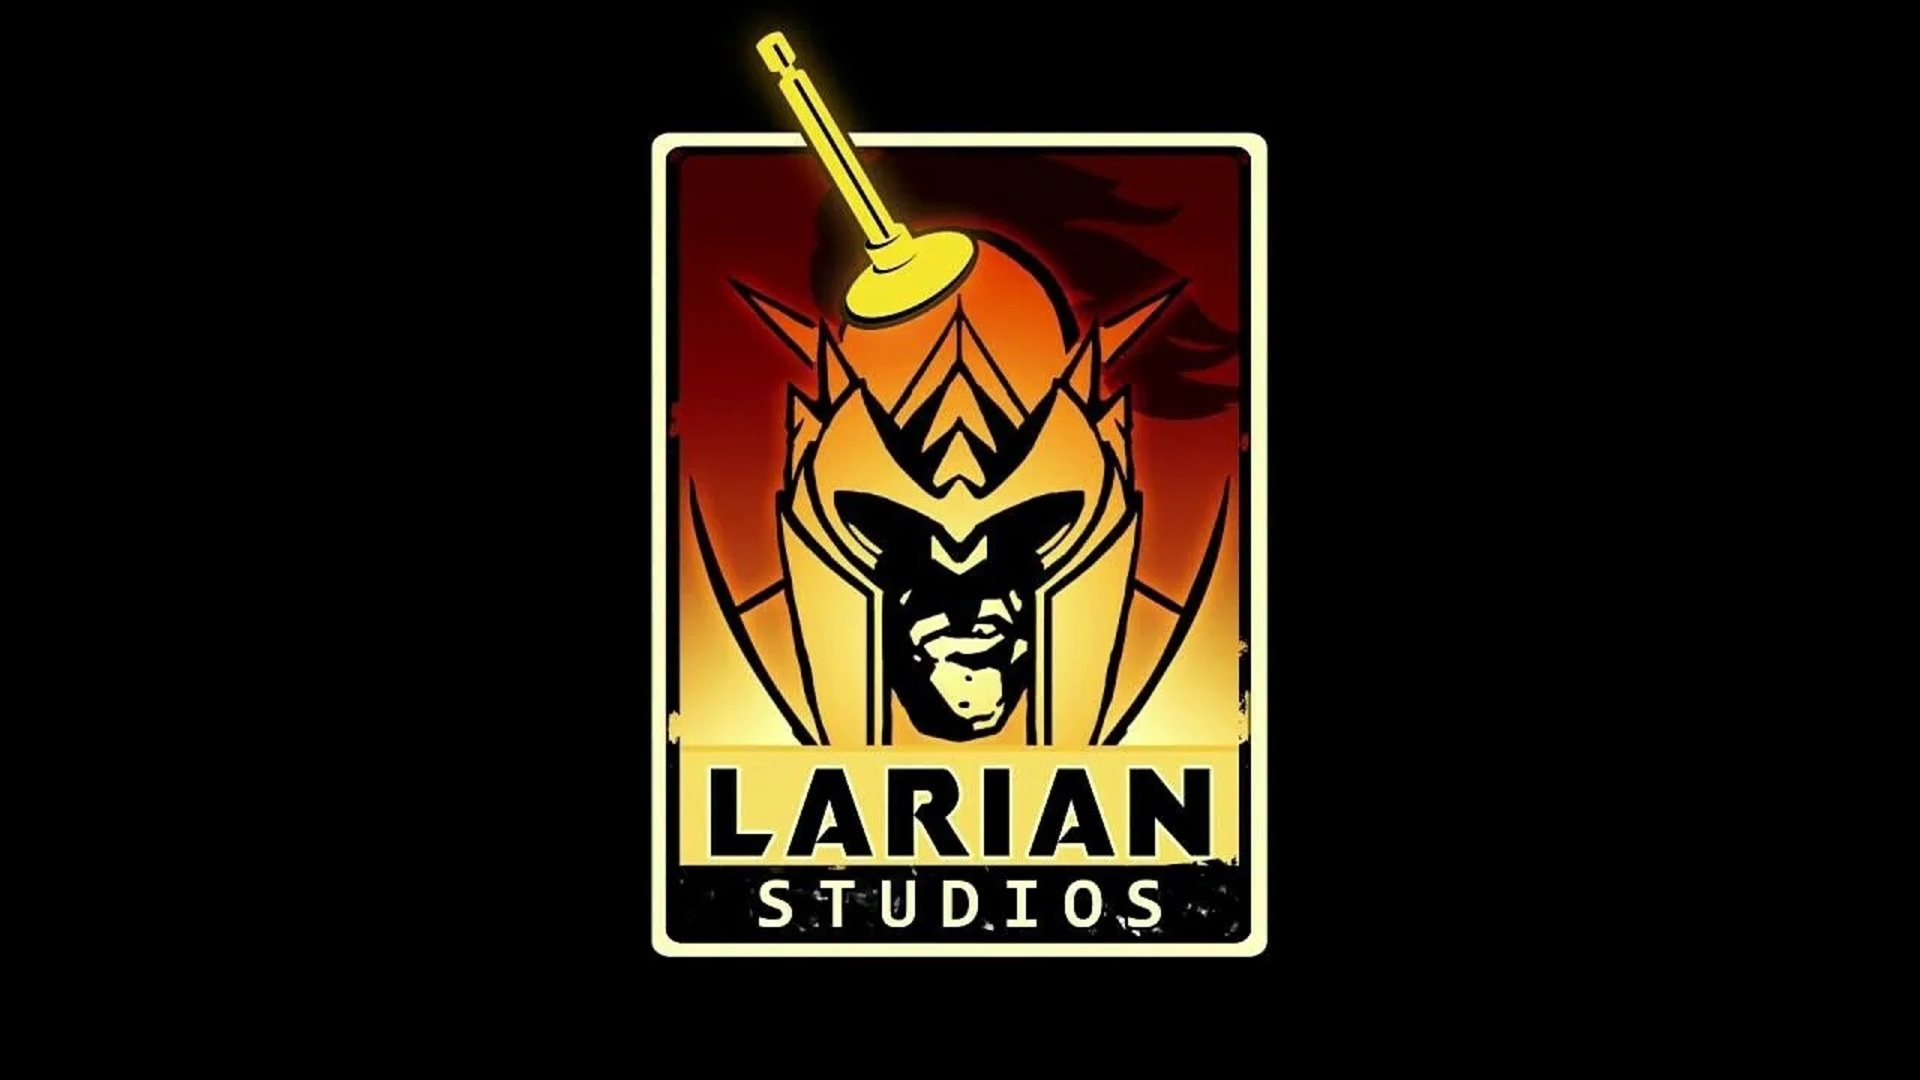 Larian Studios-ն աշխատում է երկու նոր խաղերի վրա